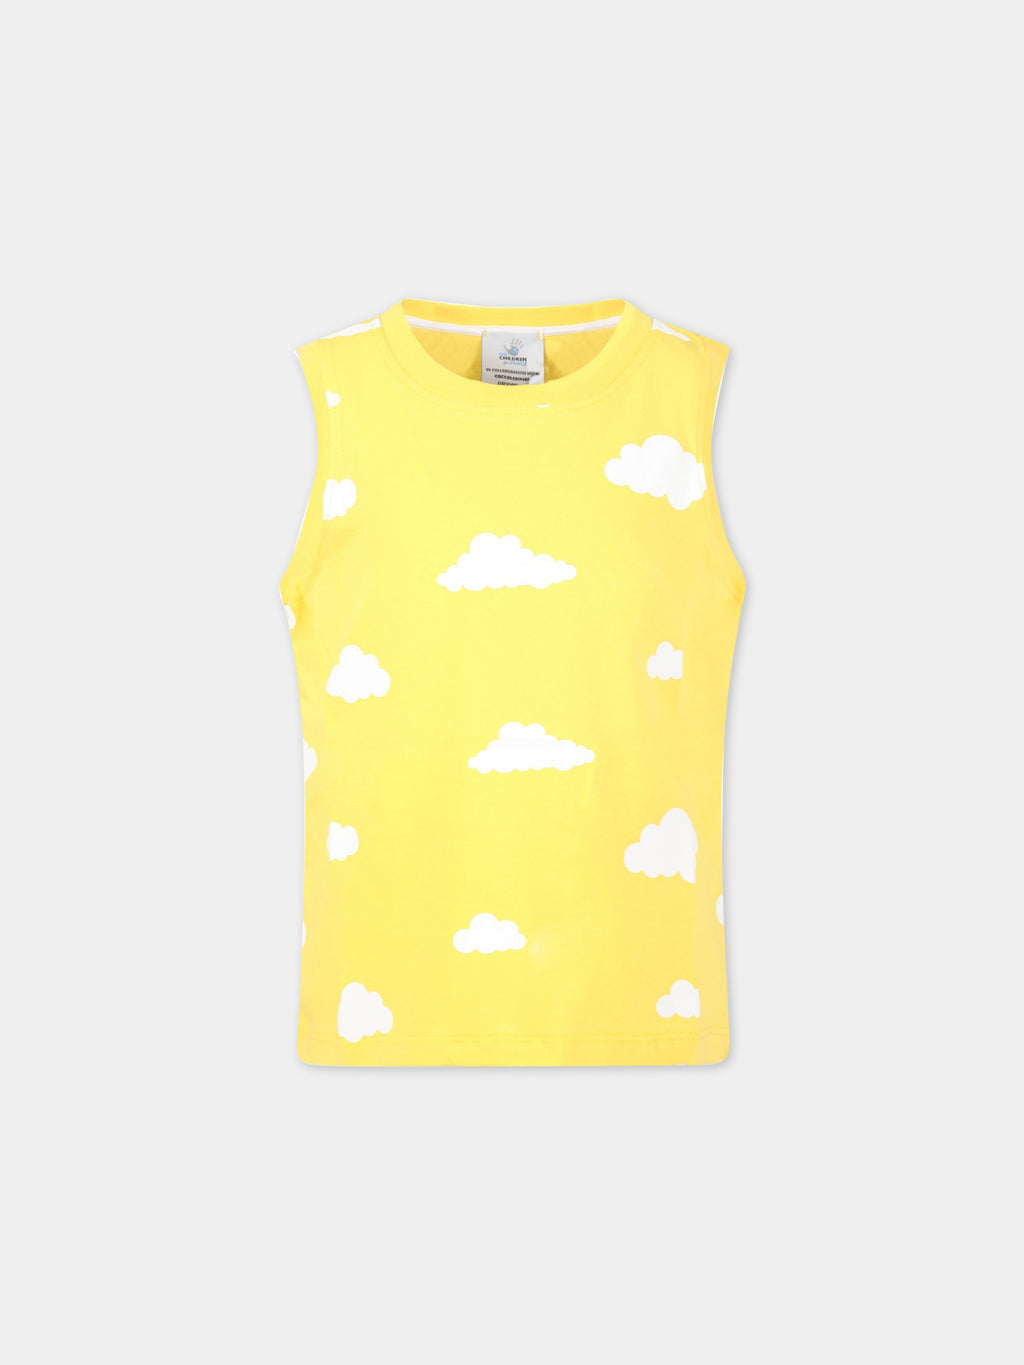 Canotta gialla per bambini con nuvole